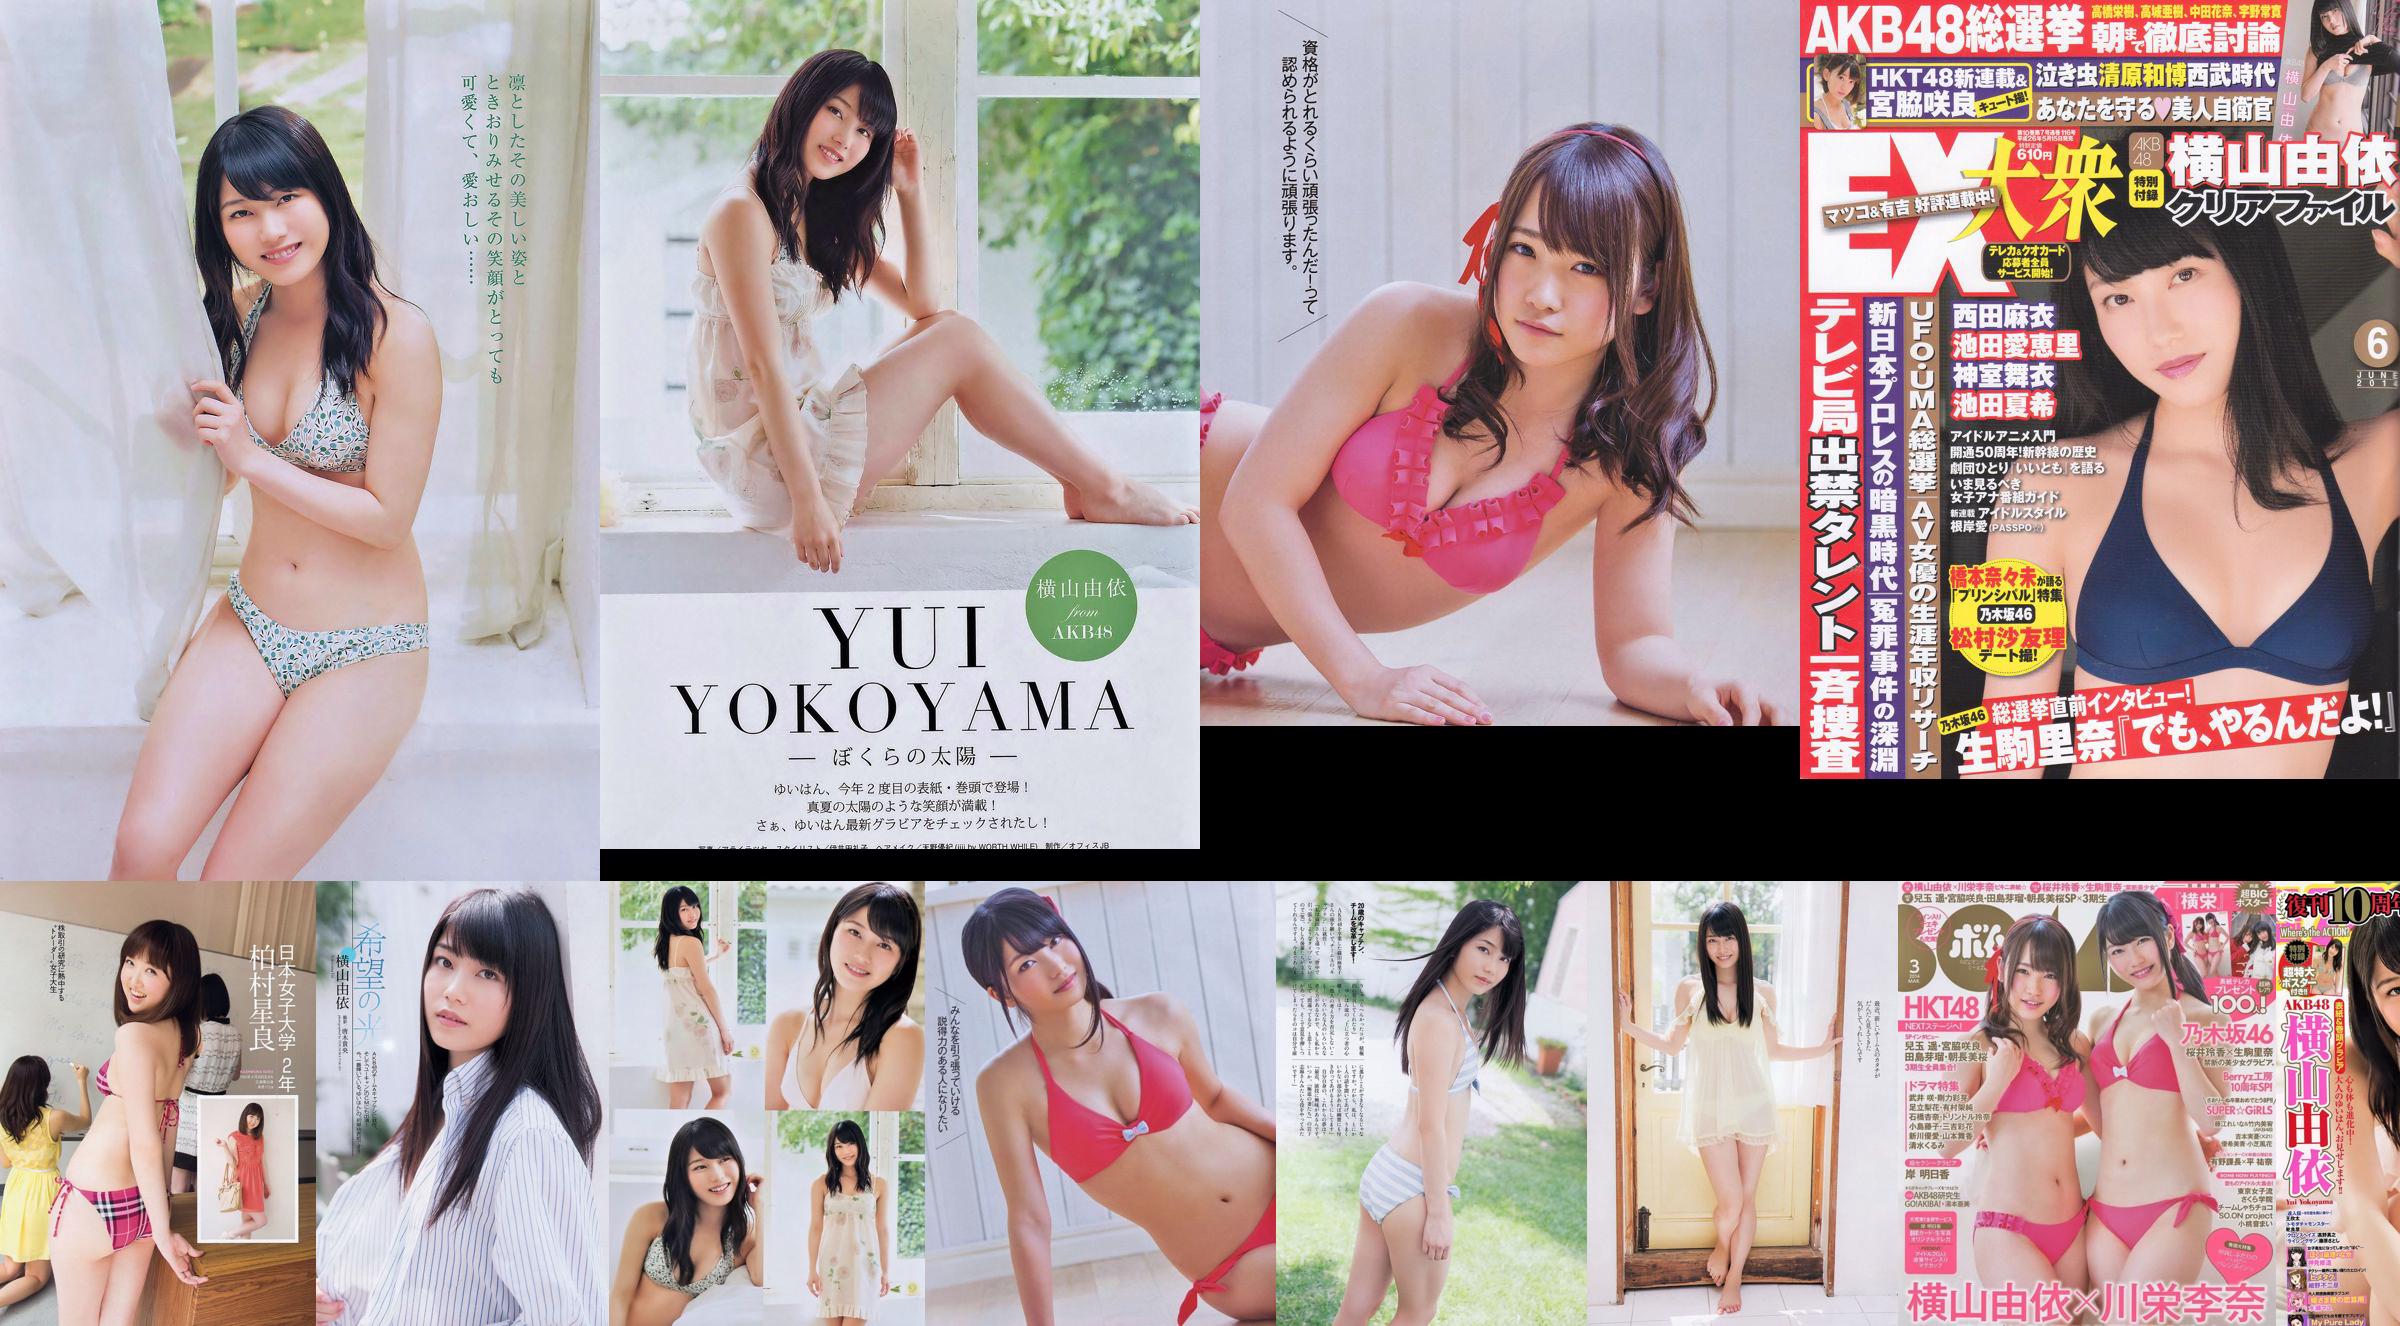 [EX Taishu] Yokoyama Yui, Miyawaki Sakura, Matsumura Sa Yuri 2014 No.06 Photo Magazine No.ec3749 Pagina 7